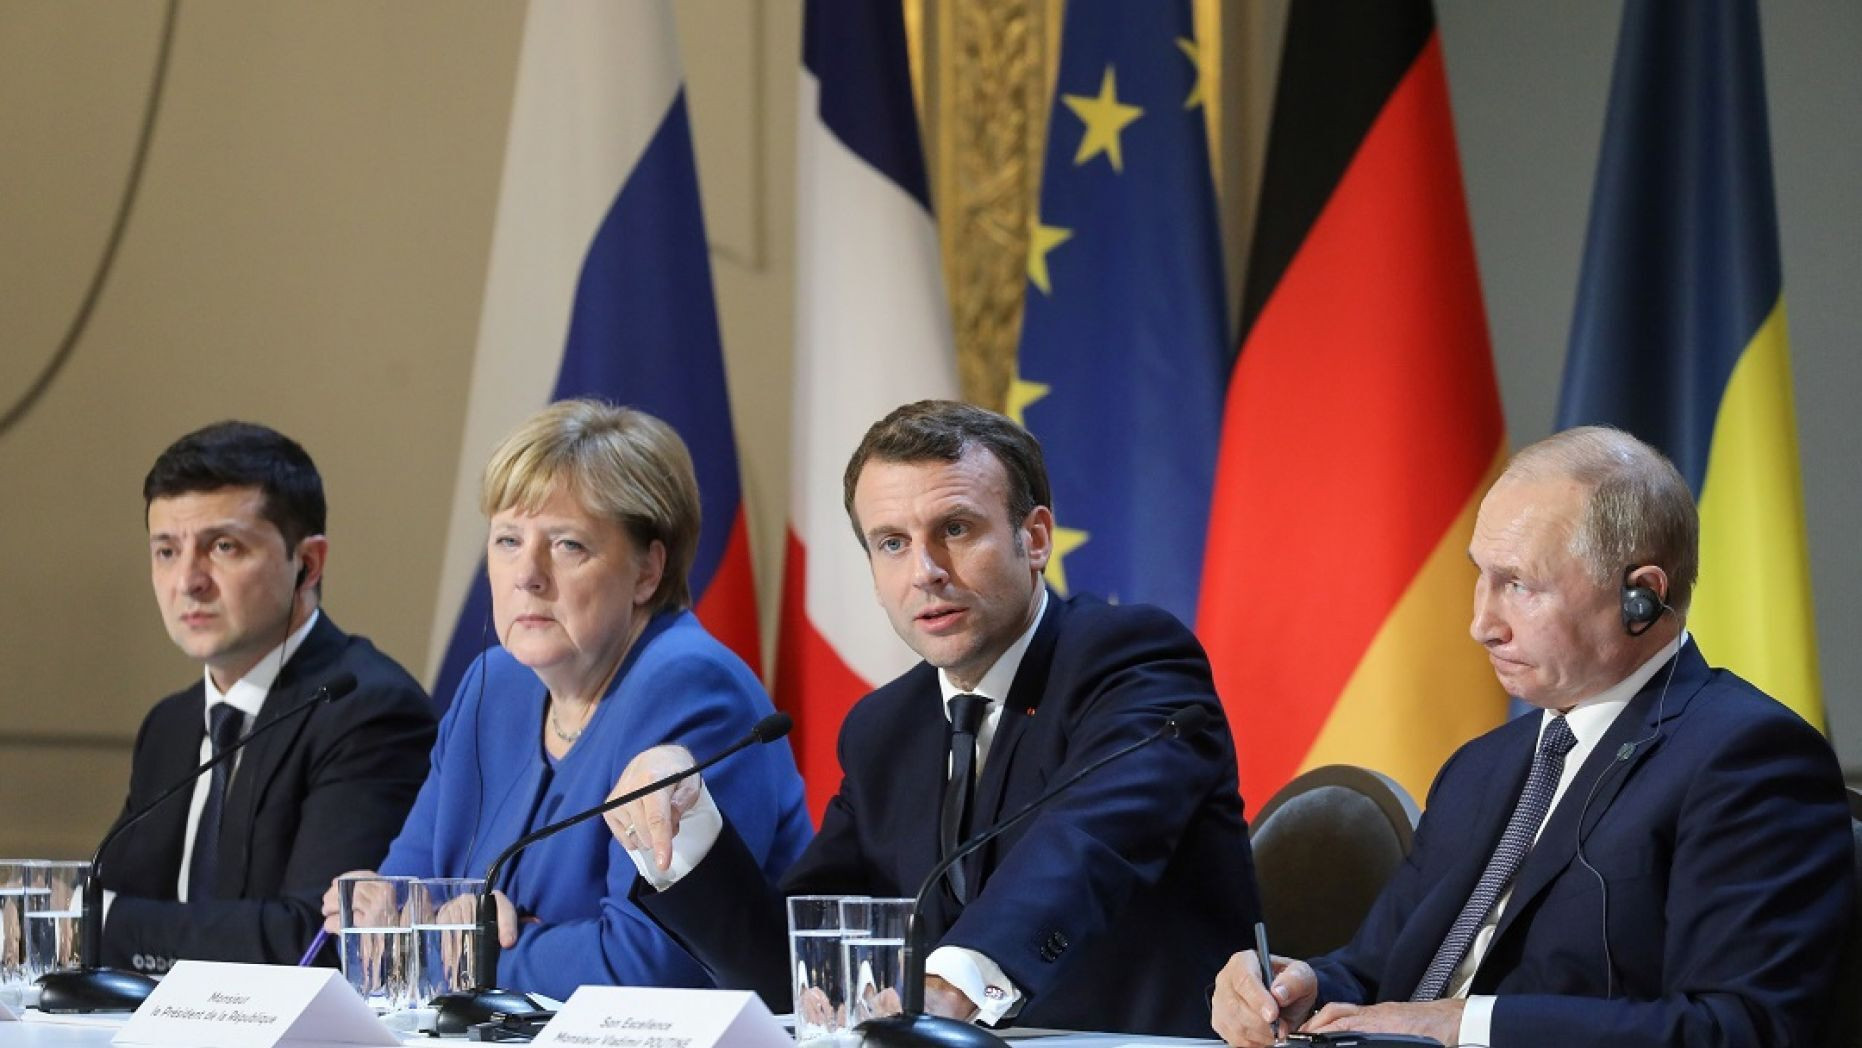 Hội nghị thượng đỉnh nhóm Bộ tứ Normandy gồm các nhà lãnh đạo Đức, Pháp, Nga, Ukraine họp tại Paris, Pháp hôm 9/12/2019 thống nhất nhiều nội dung về cuộc khủng hoảng miền Đông Ukraine.  Ảnh: AP